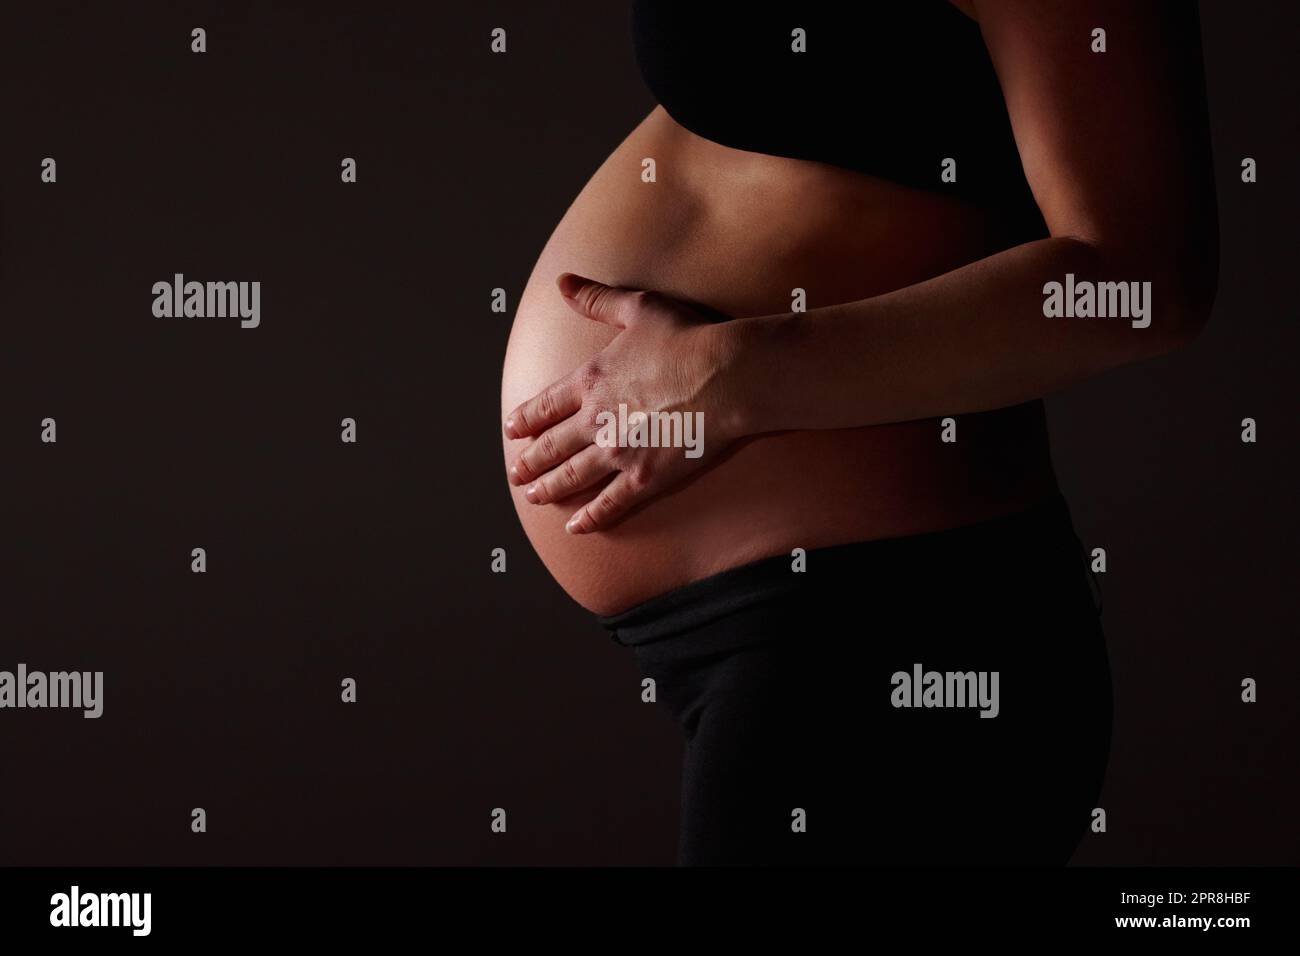 Schwanger Frau erwartet ein Baby gegen schwarz - Copyspace. Mittelteil einer Schwangeren, die ein Baby gegen Schwarz erwartet - Copyspace. Stockfoto